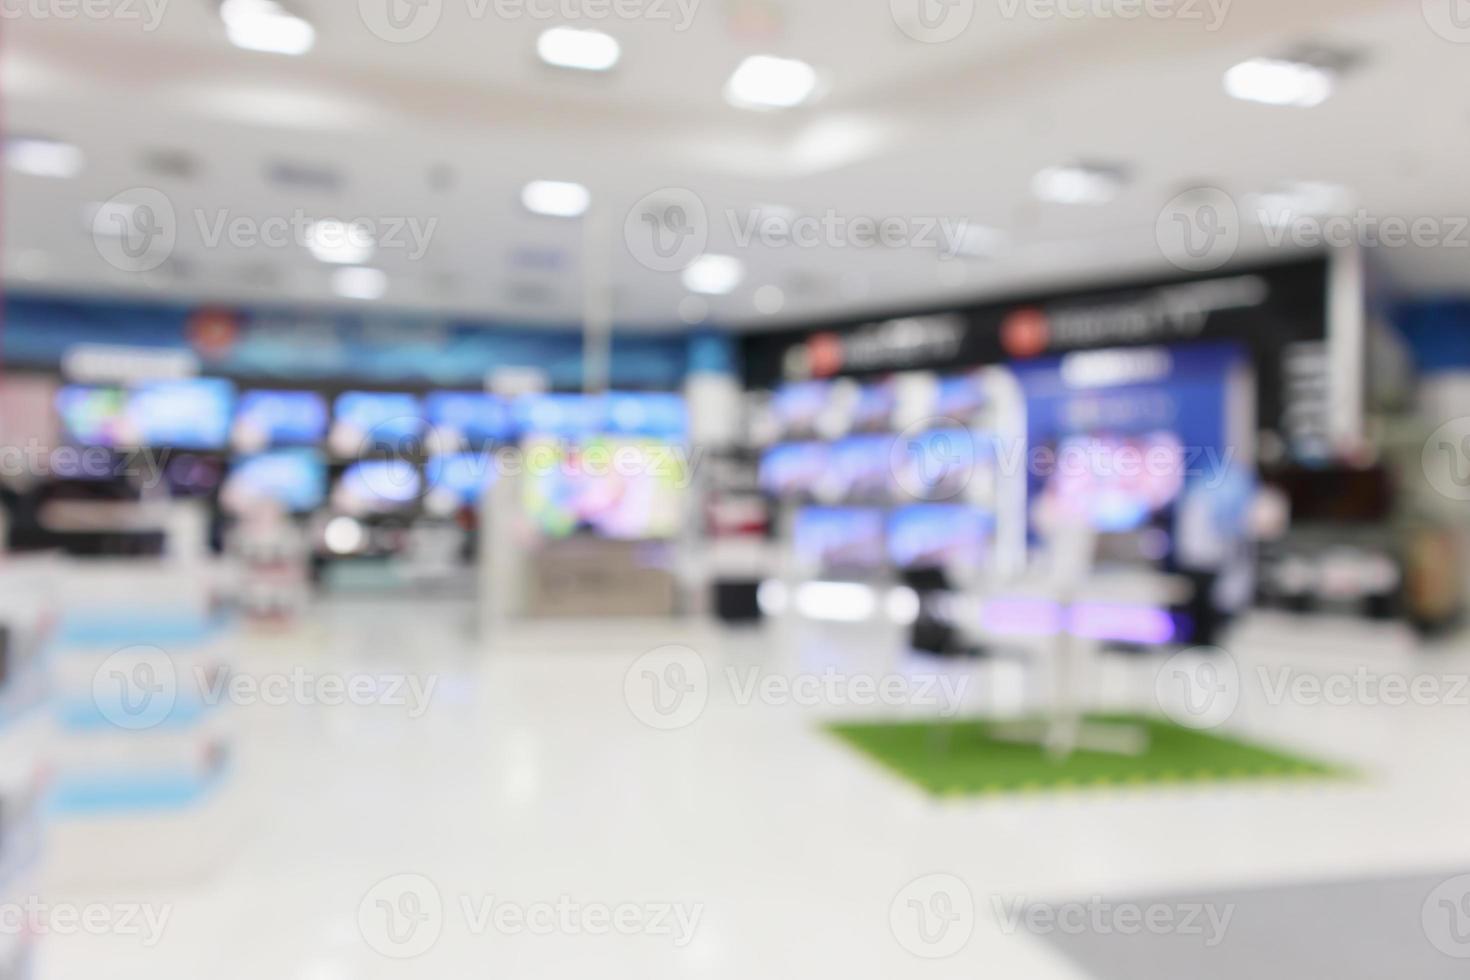 loja de departamentos eletrônicos mostra tv de televisão e eletrodomésticos com fundo desfocado luz bokeh foto